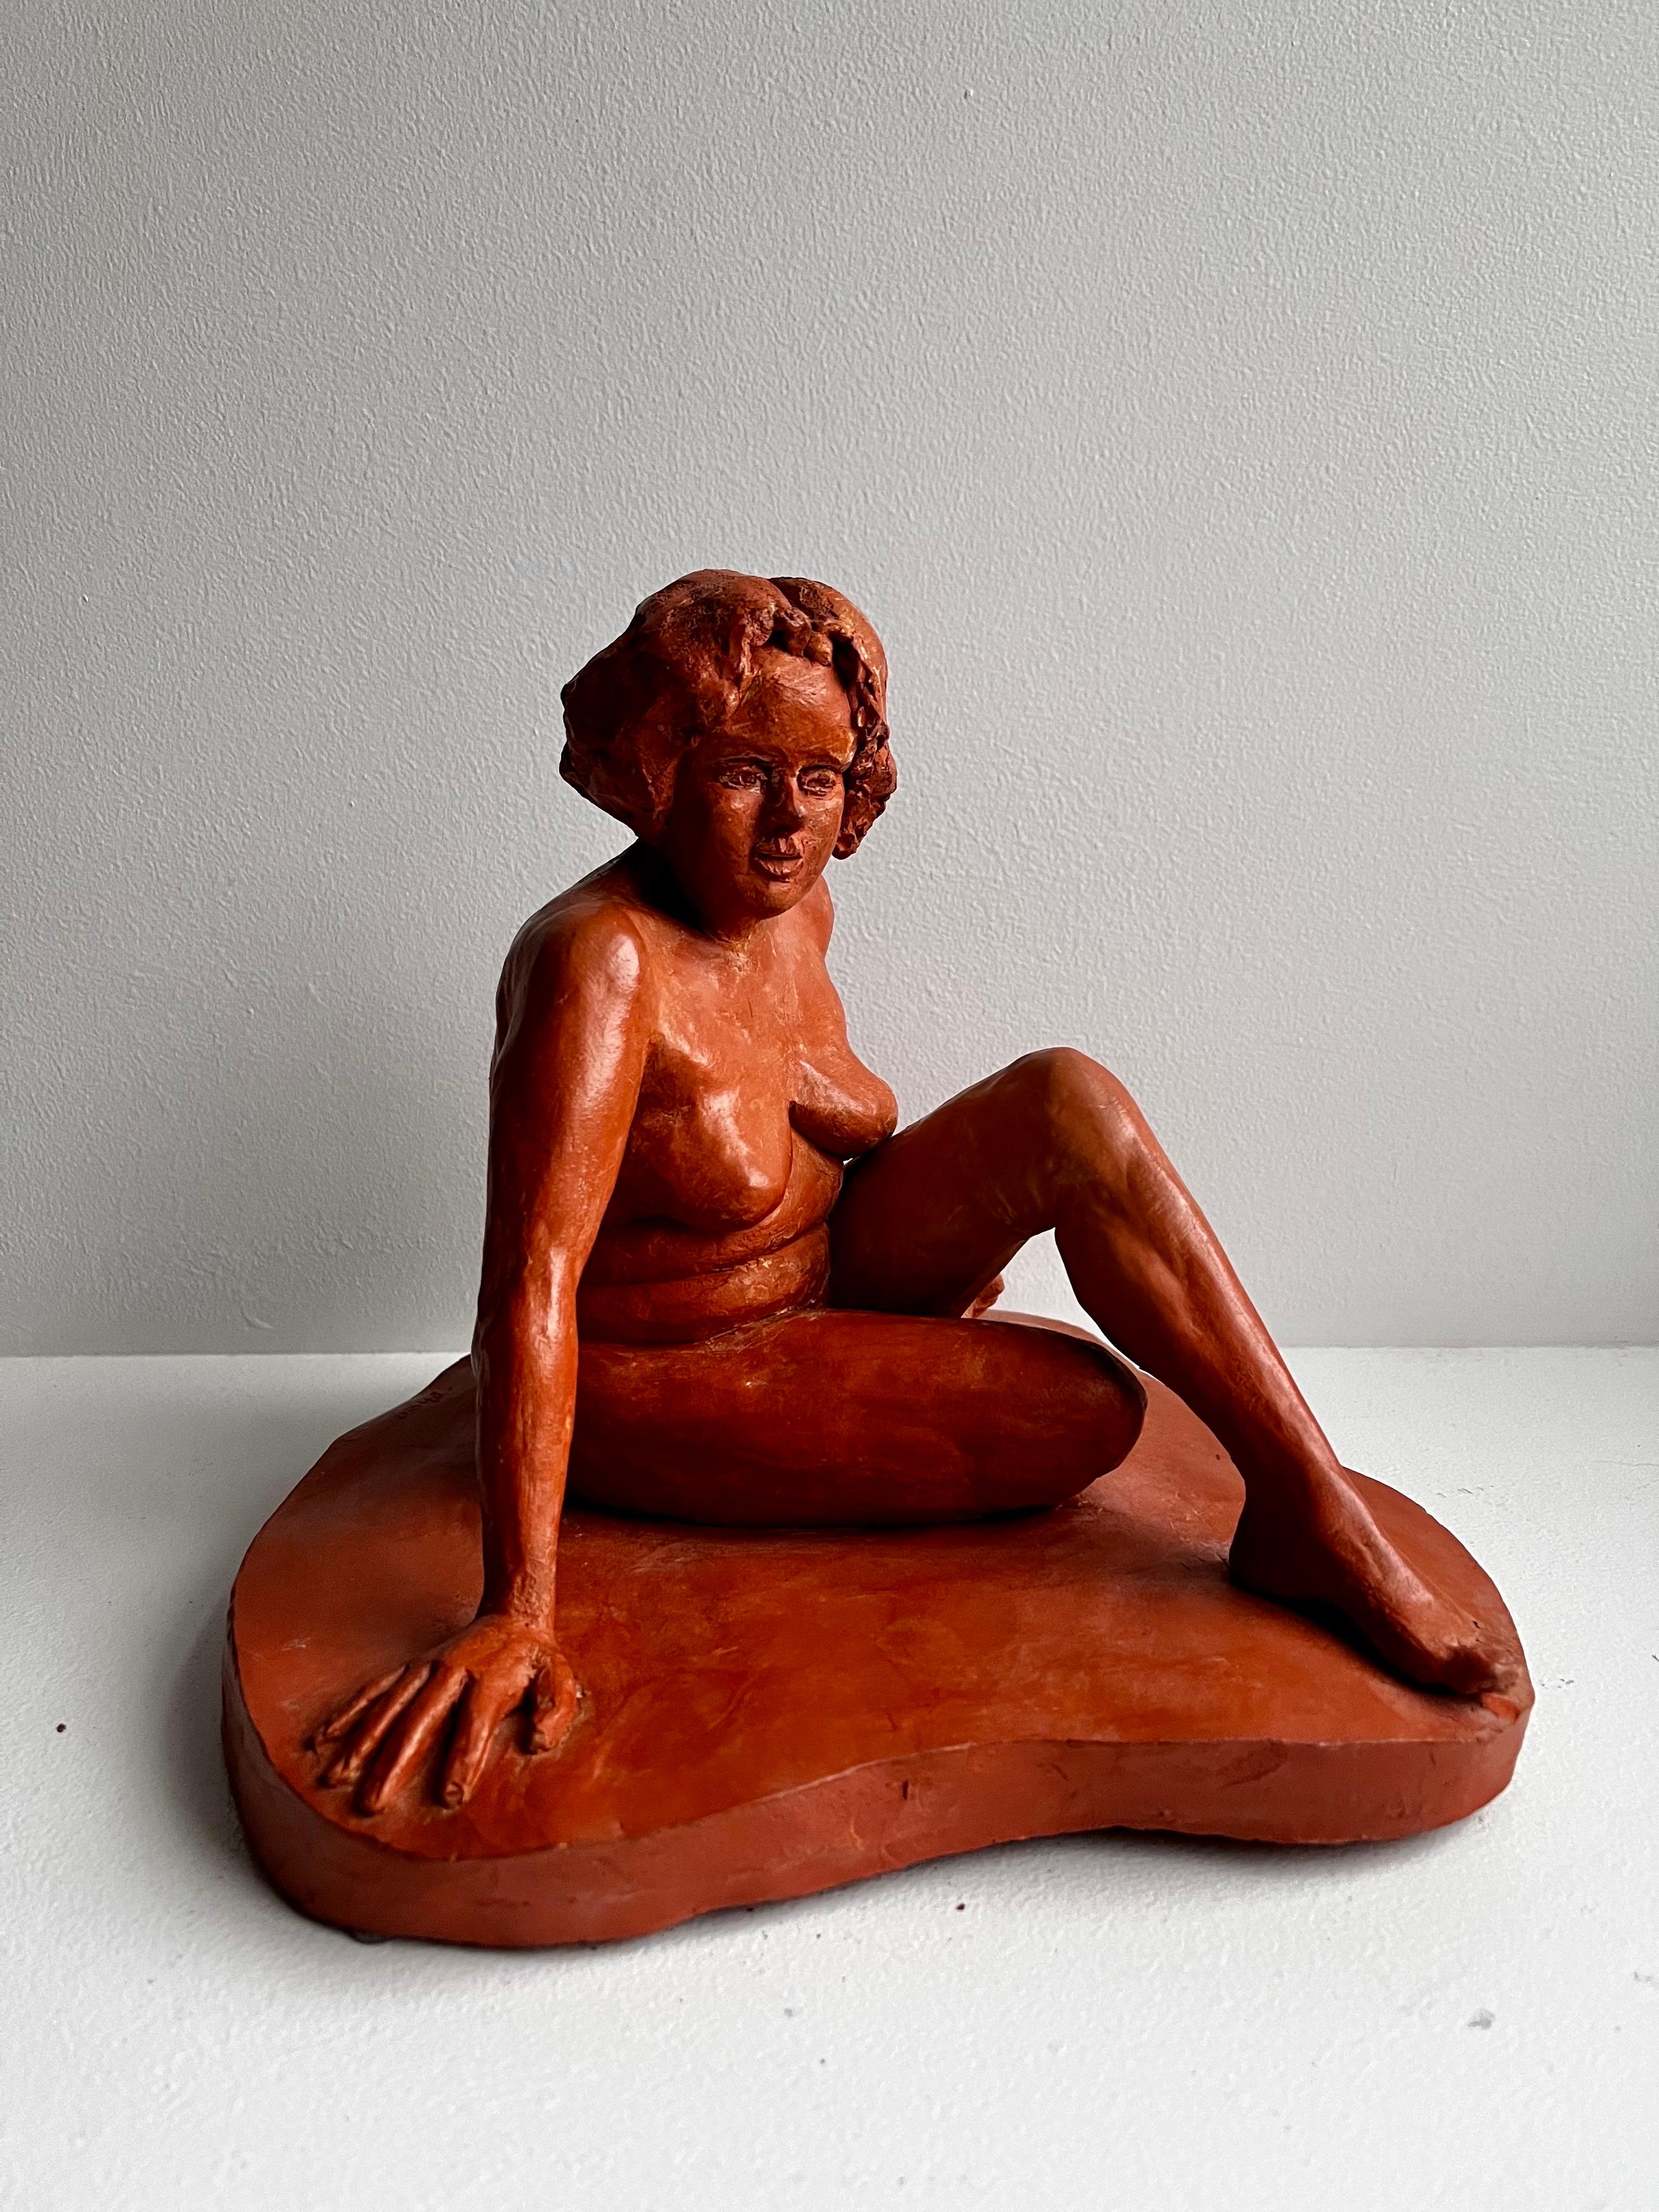 Rote Terrakotta-Skulptur eines sitzenden Aktes
um 1960
signiert - Künstler unbekannt 

schöne Farbe und Größe
kleiner Chip in der Nähe des Fußes